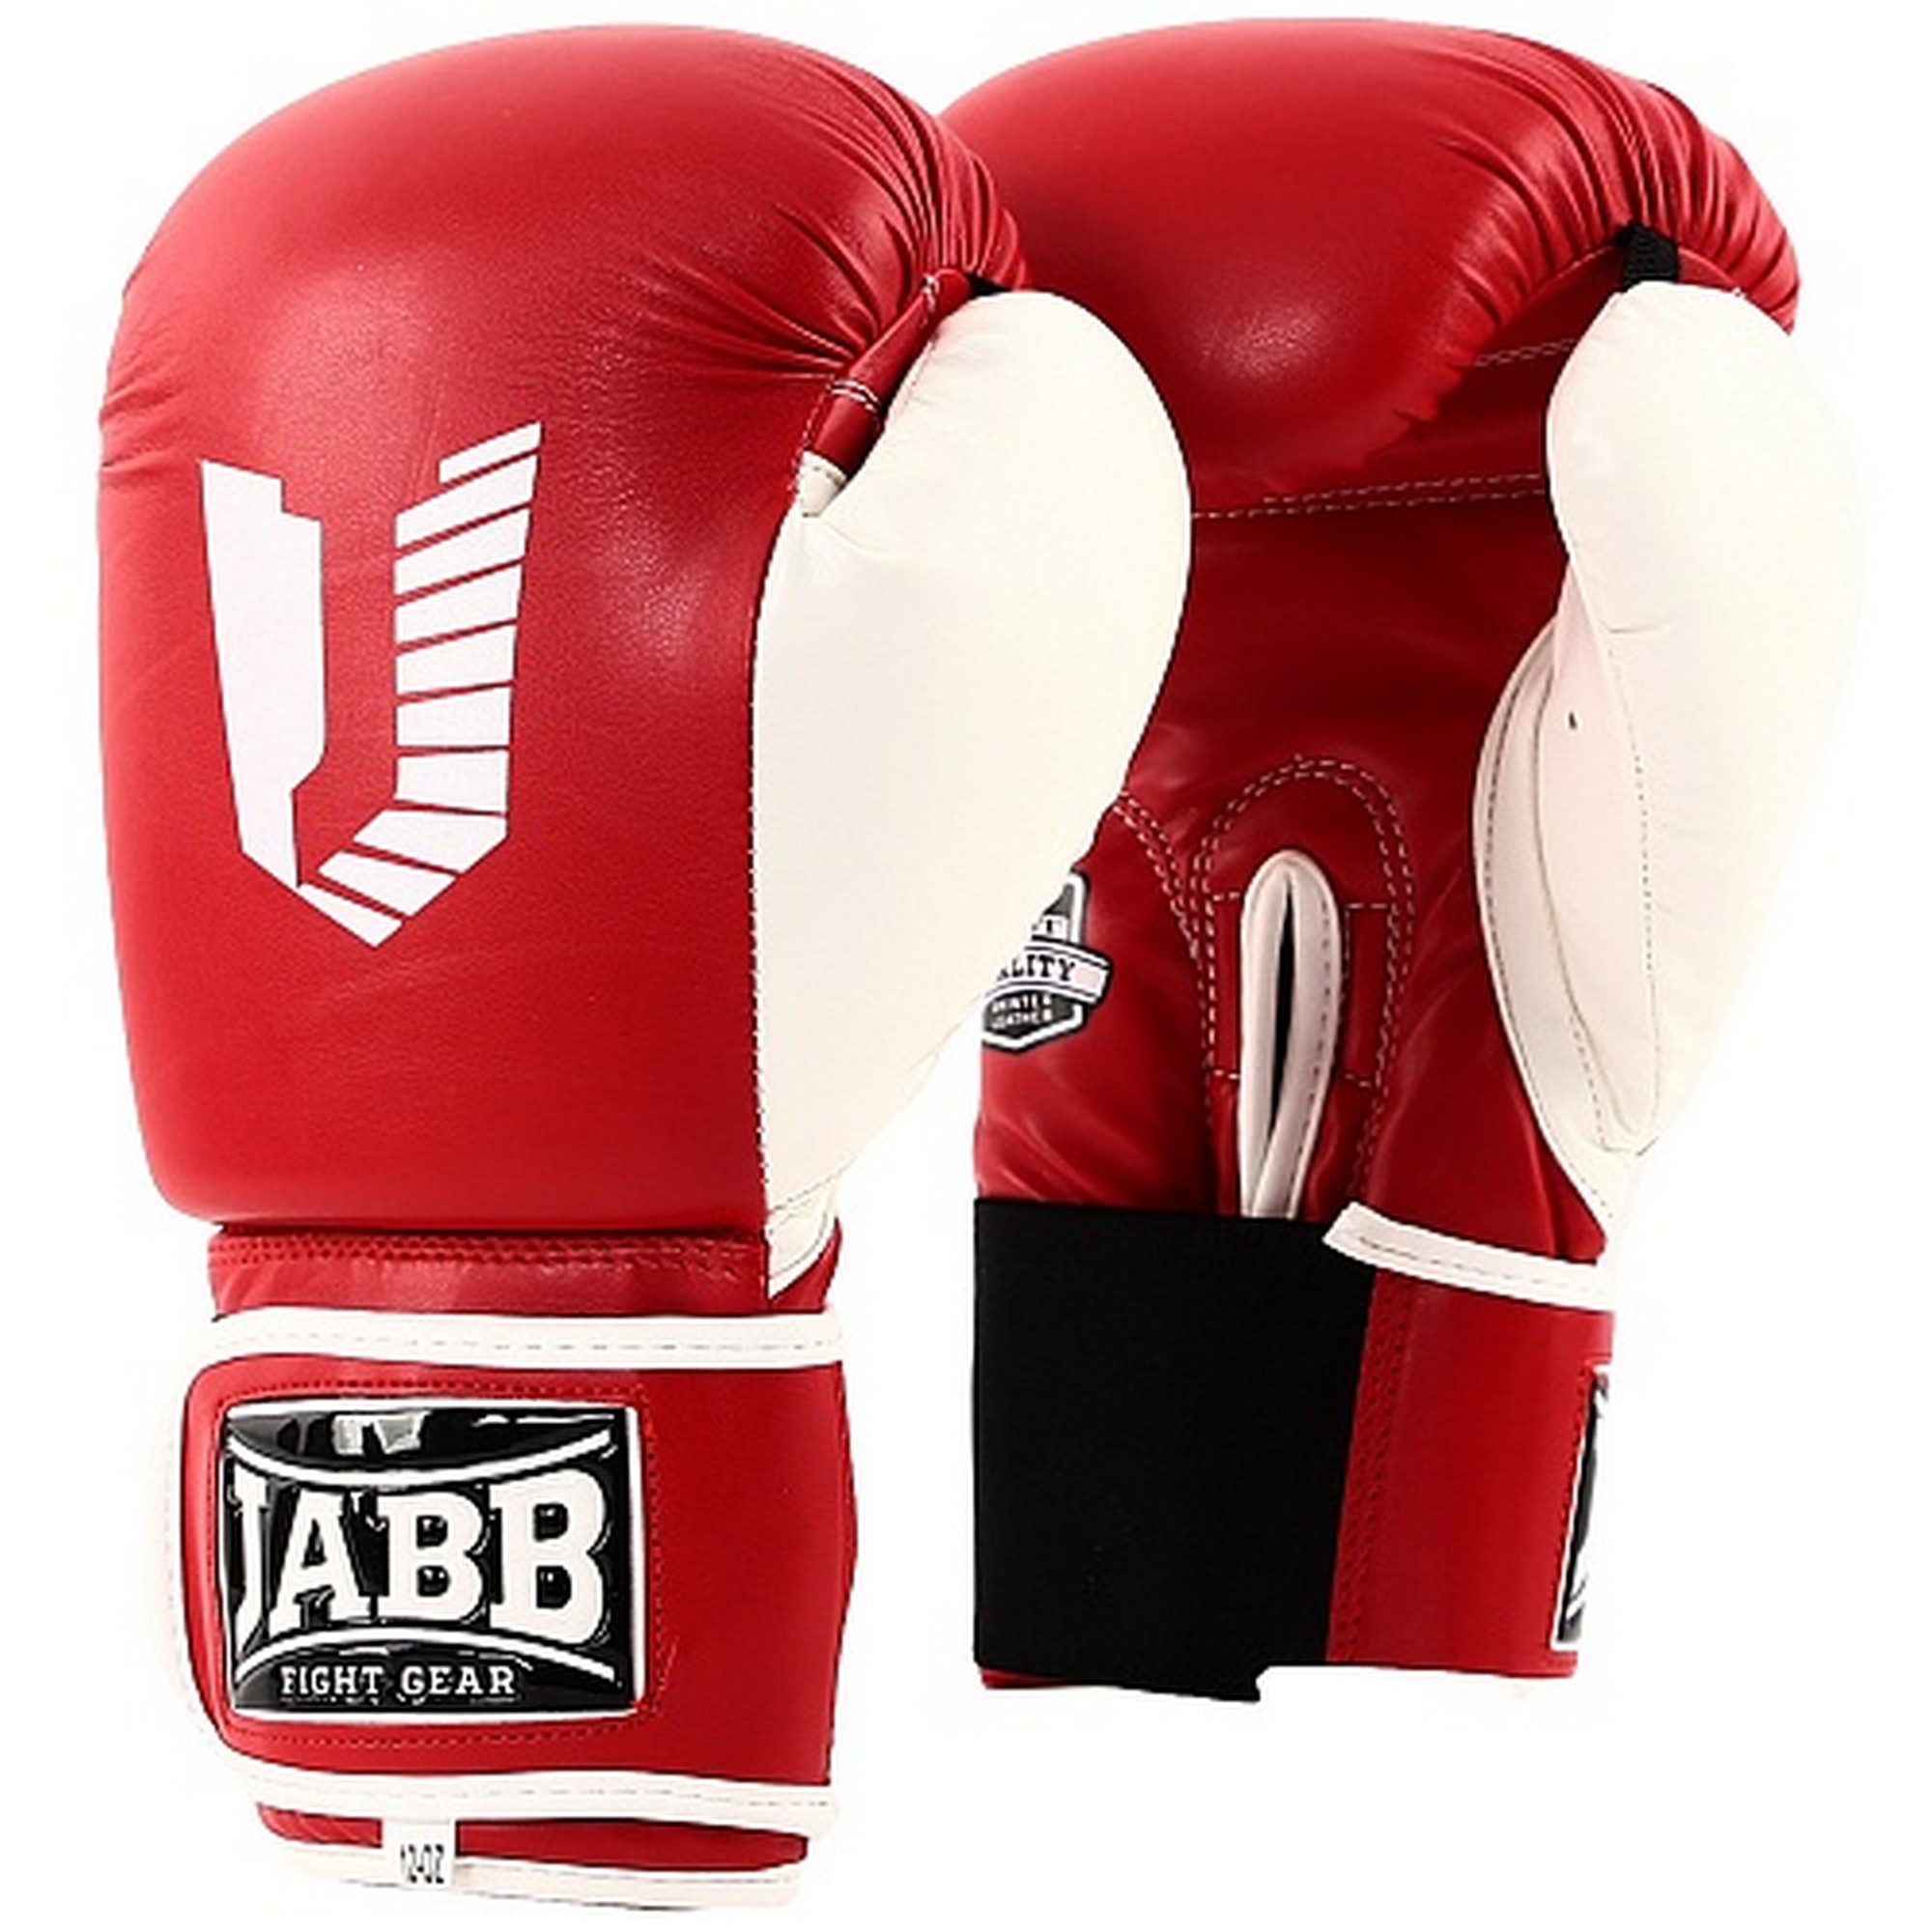 Перчатки боксерские (иск.кожа) 12ун Jabb JE-4056/Eu 56 красный\белый 2000_2000